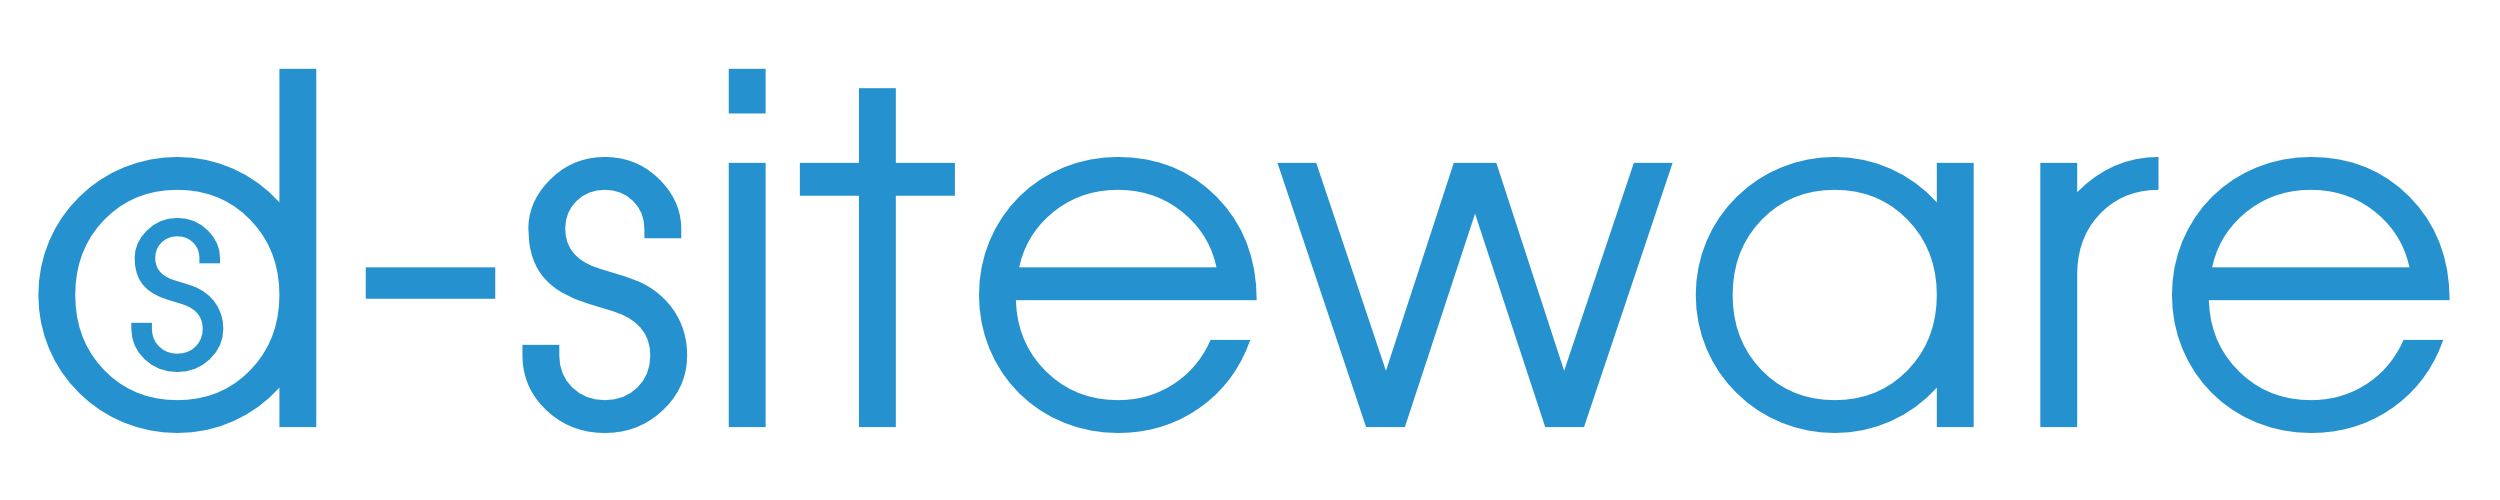 Logo d-siteware.io